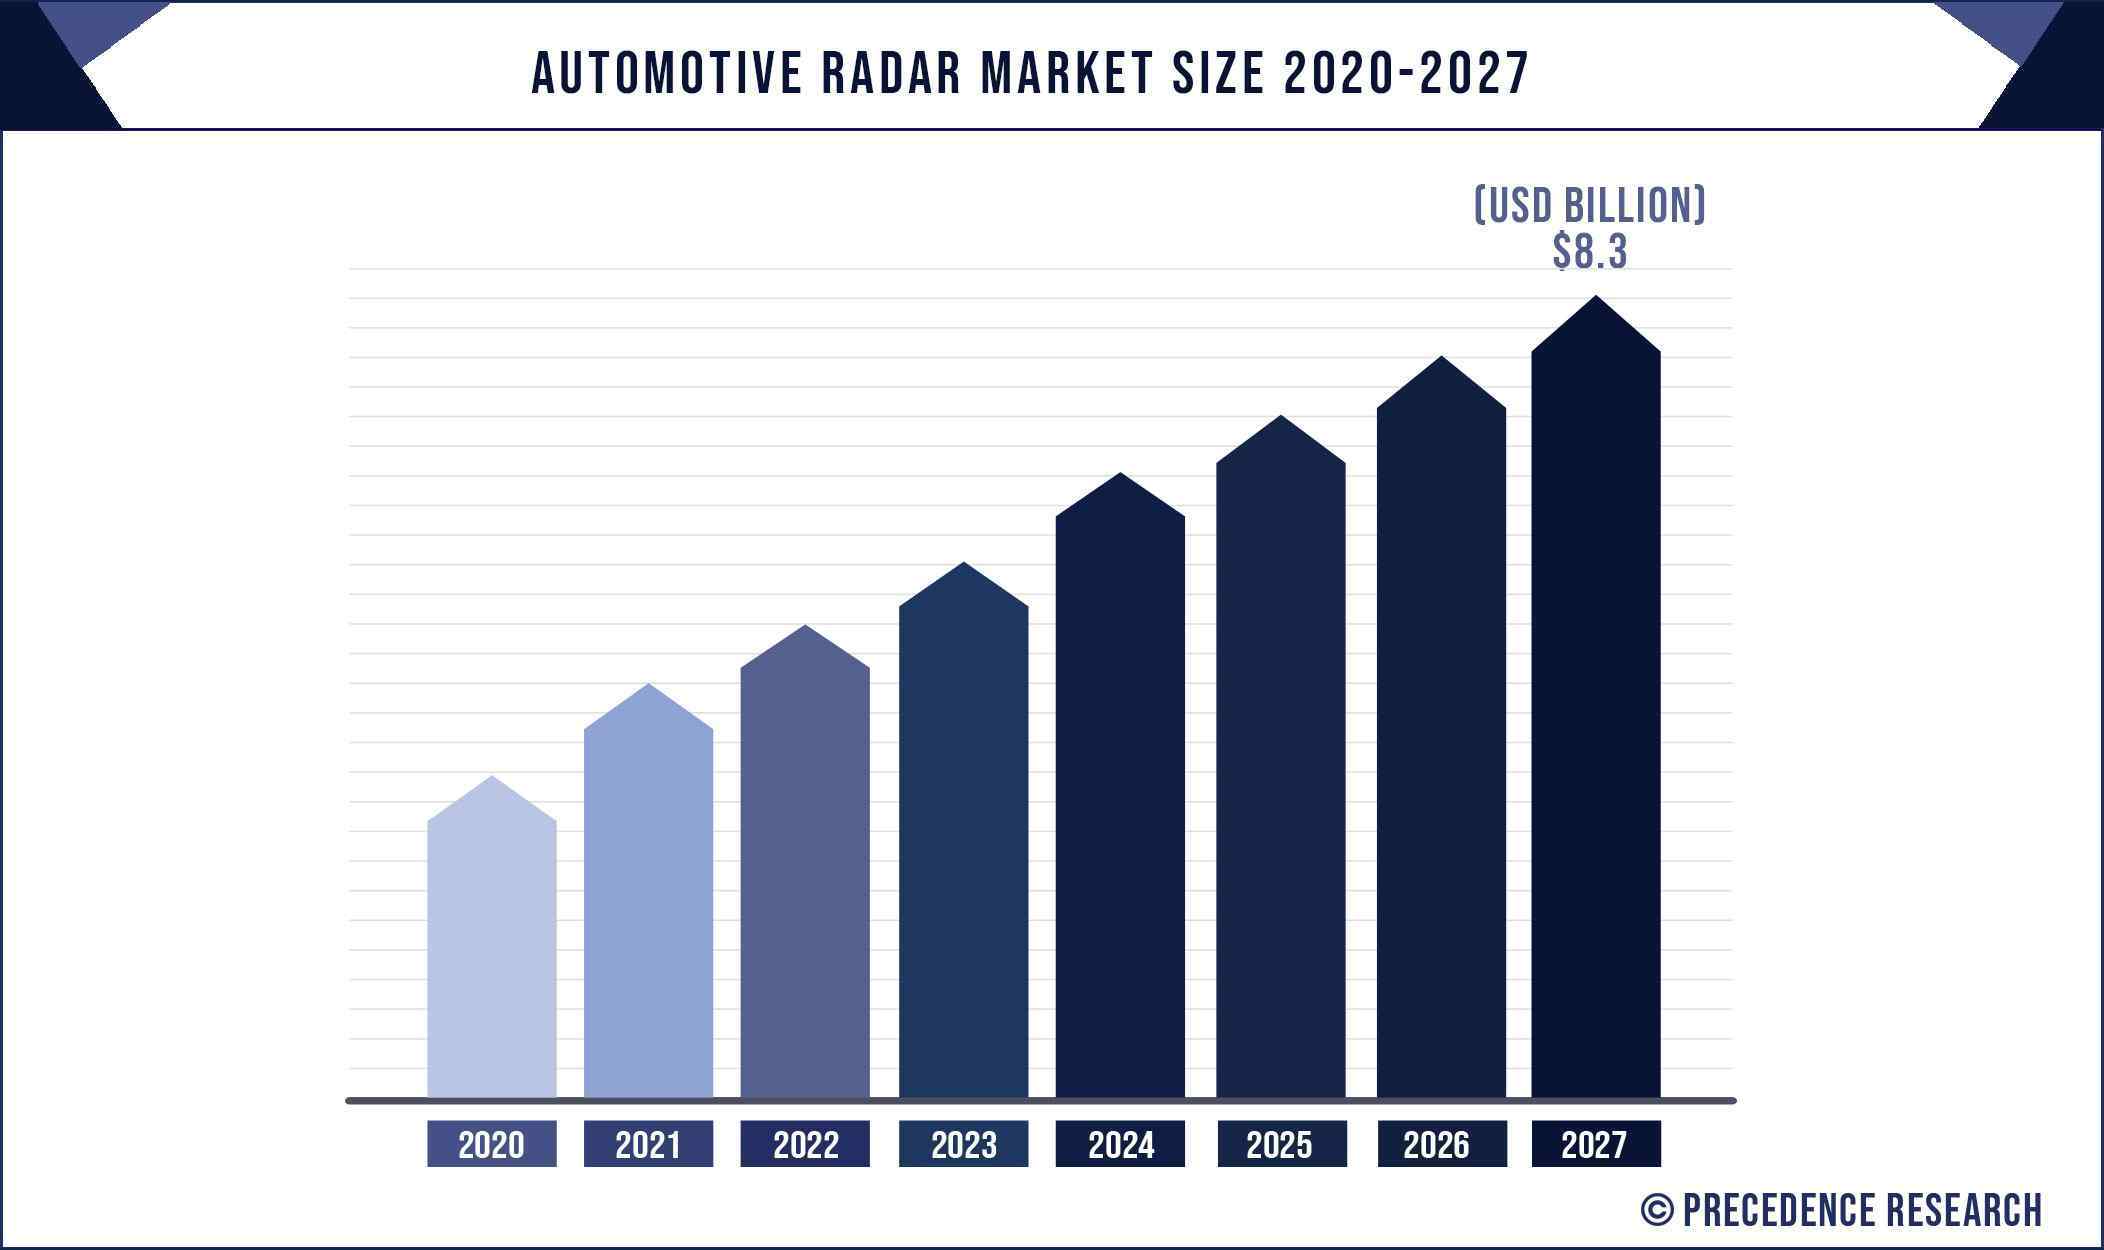 Automotive RADAR Market Size 2020 To 2027